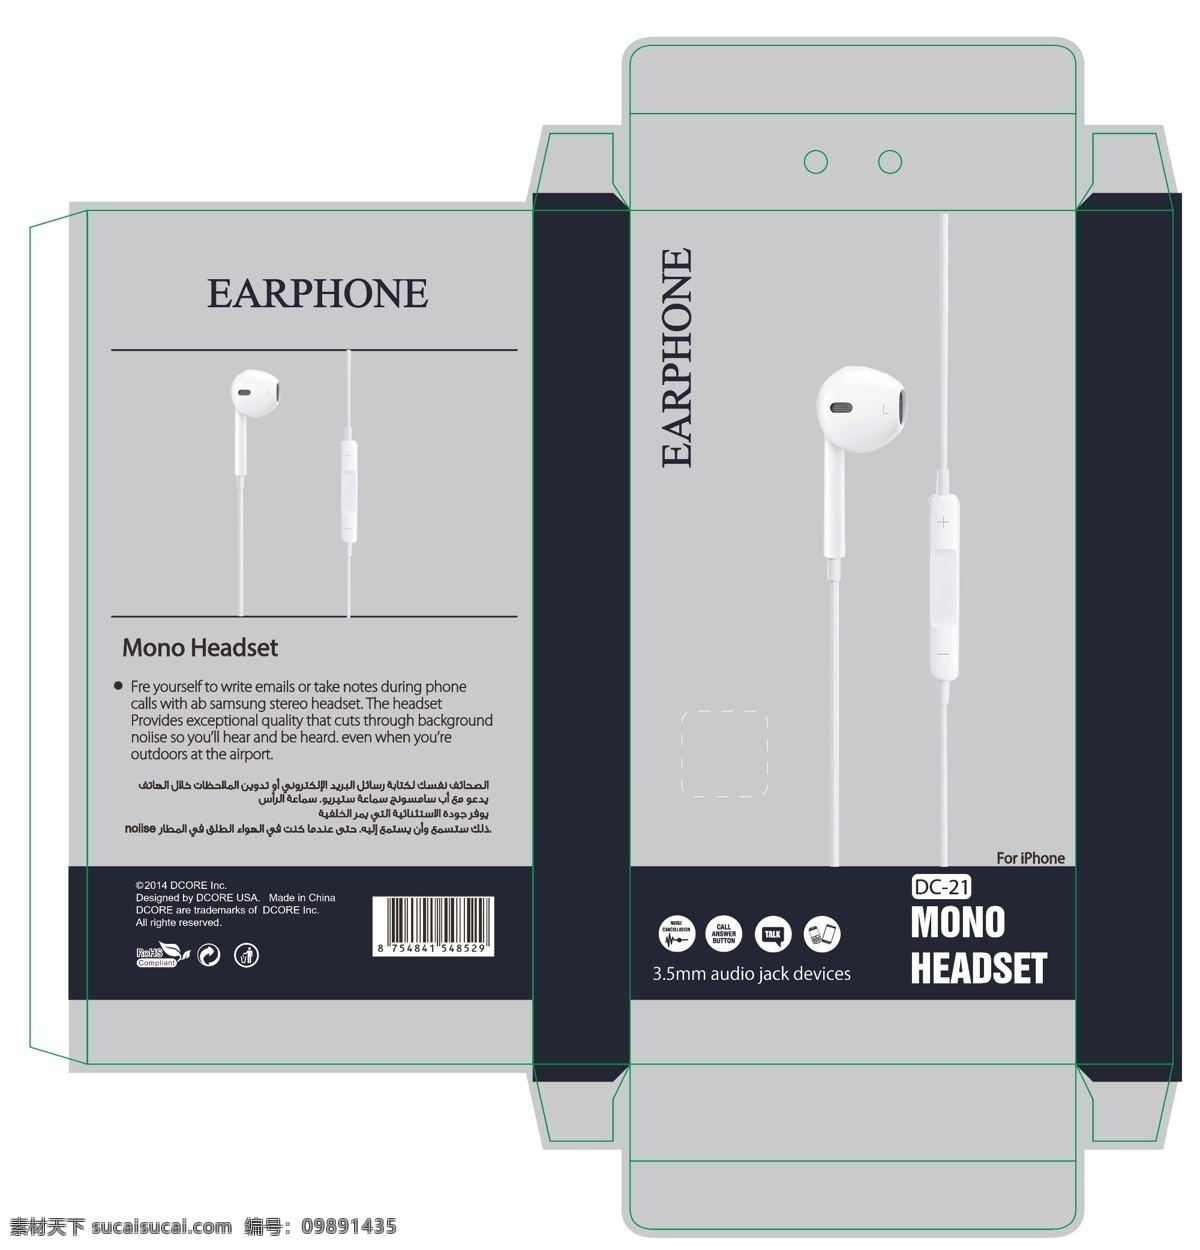 耳机包装 耳机 包装 iphone 包装设计 单耳